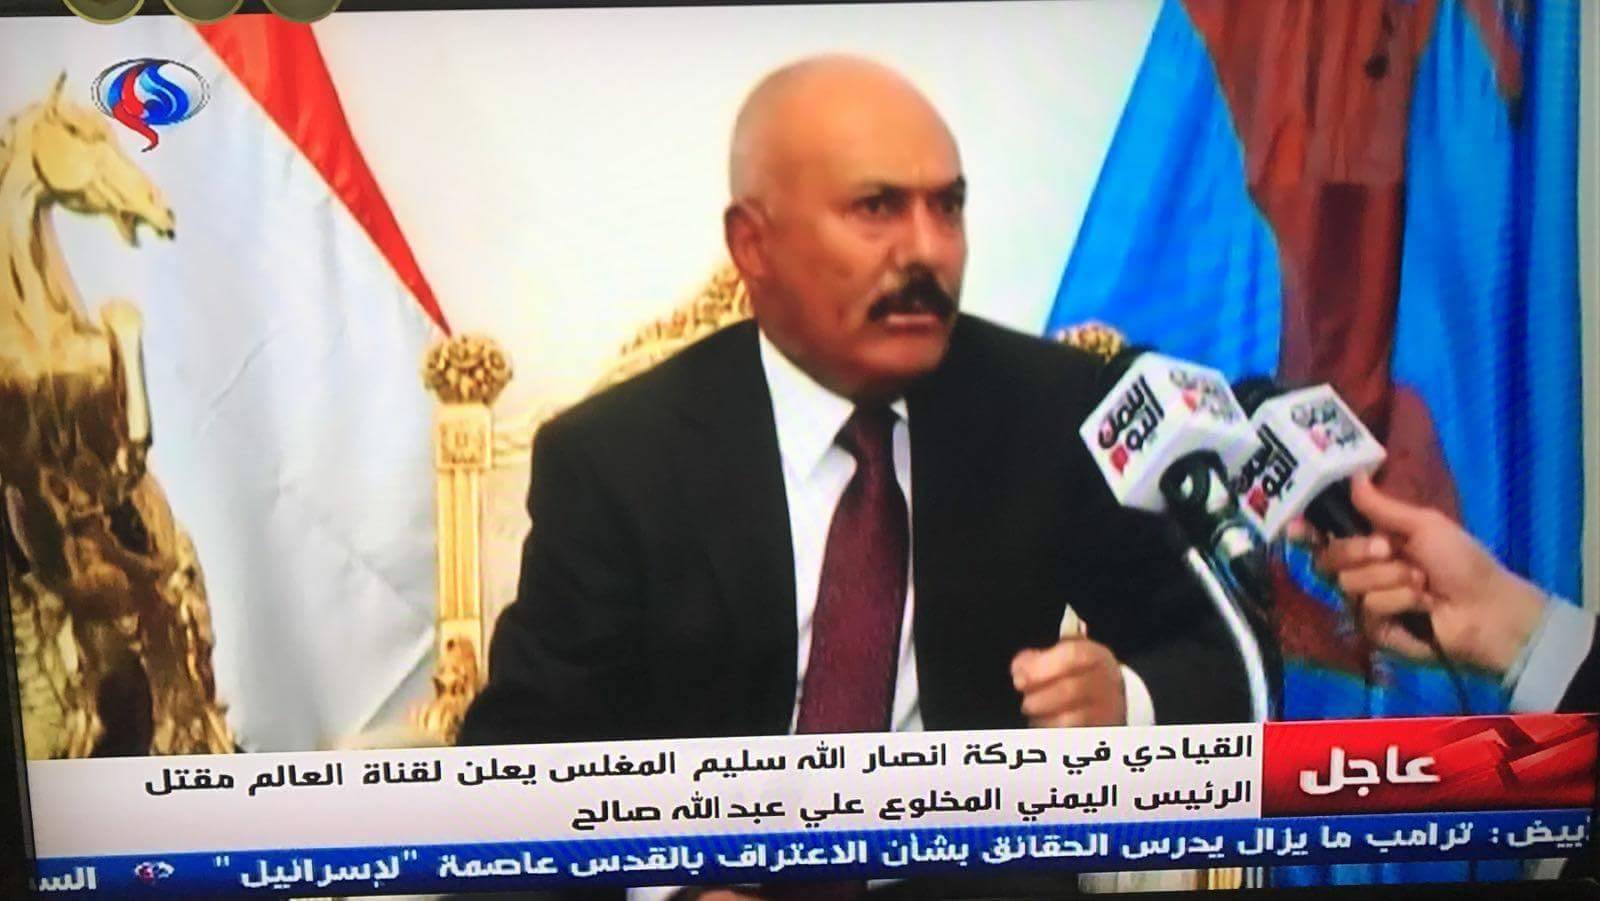 L'un des leaders d'AnsarAllah, Salim Moghlech via le chaîne de la résistance Al Alam, confirme la mort du traître Ali Abdallah Saleh